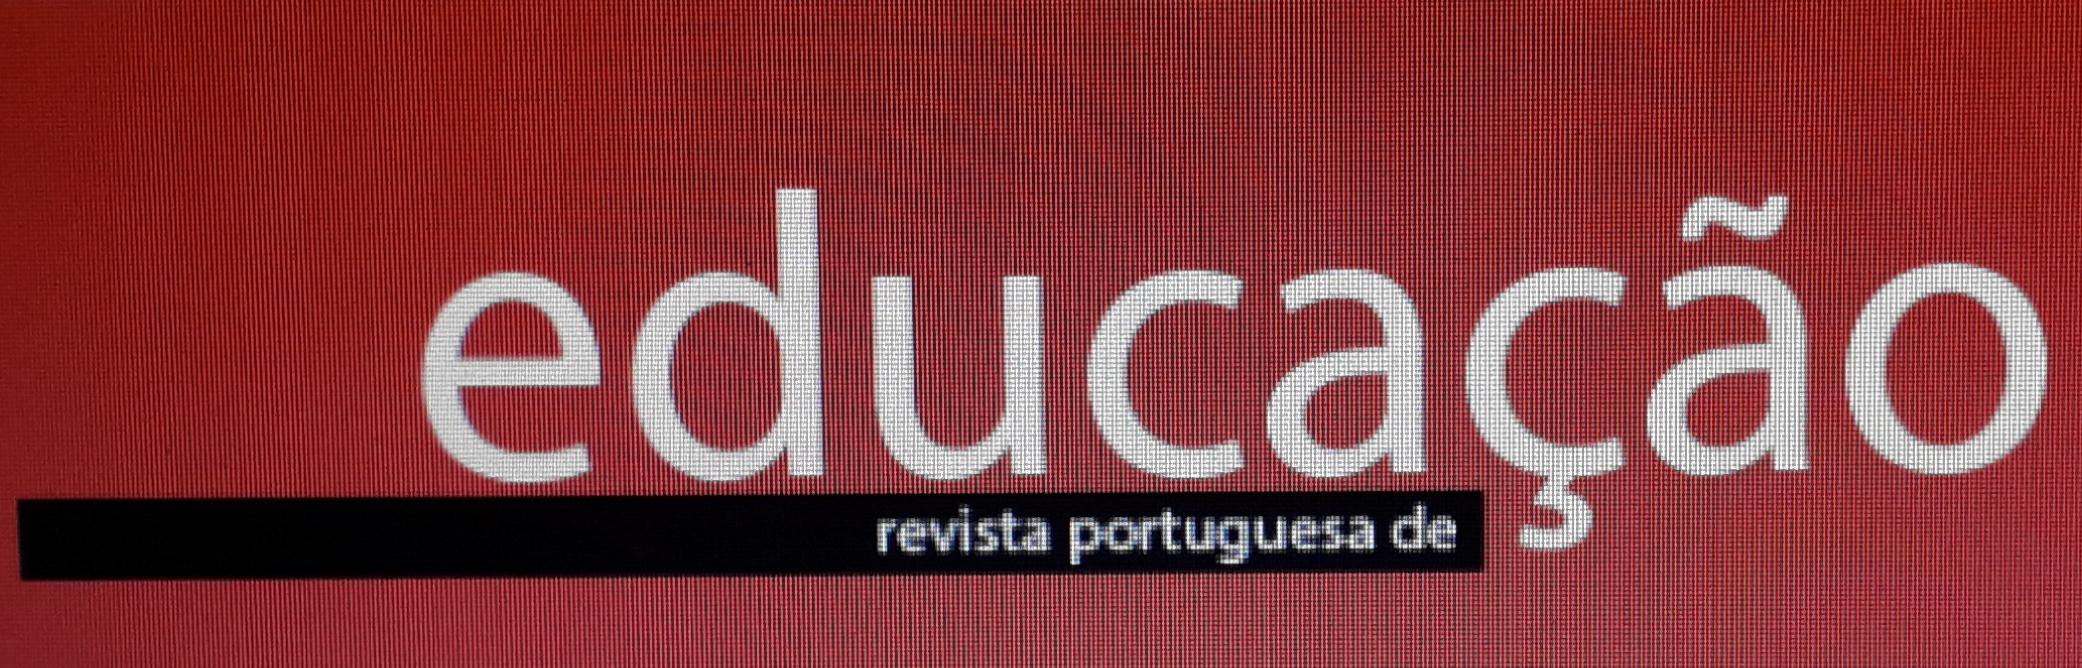 Revista Portuguesa de Educação Artigo Ricardo 2020